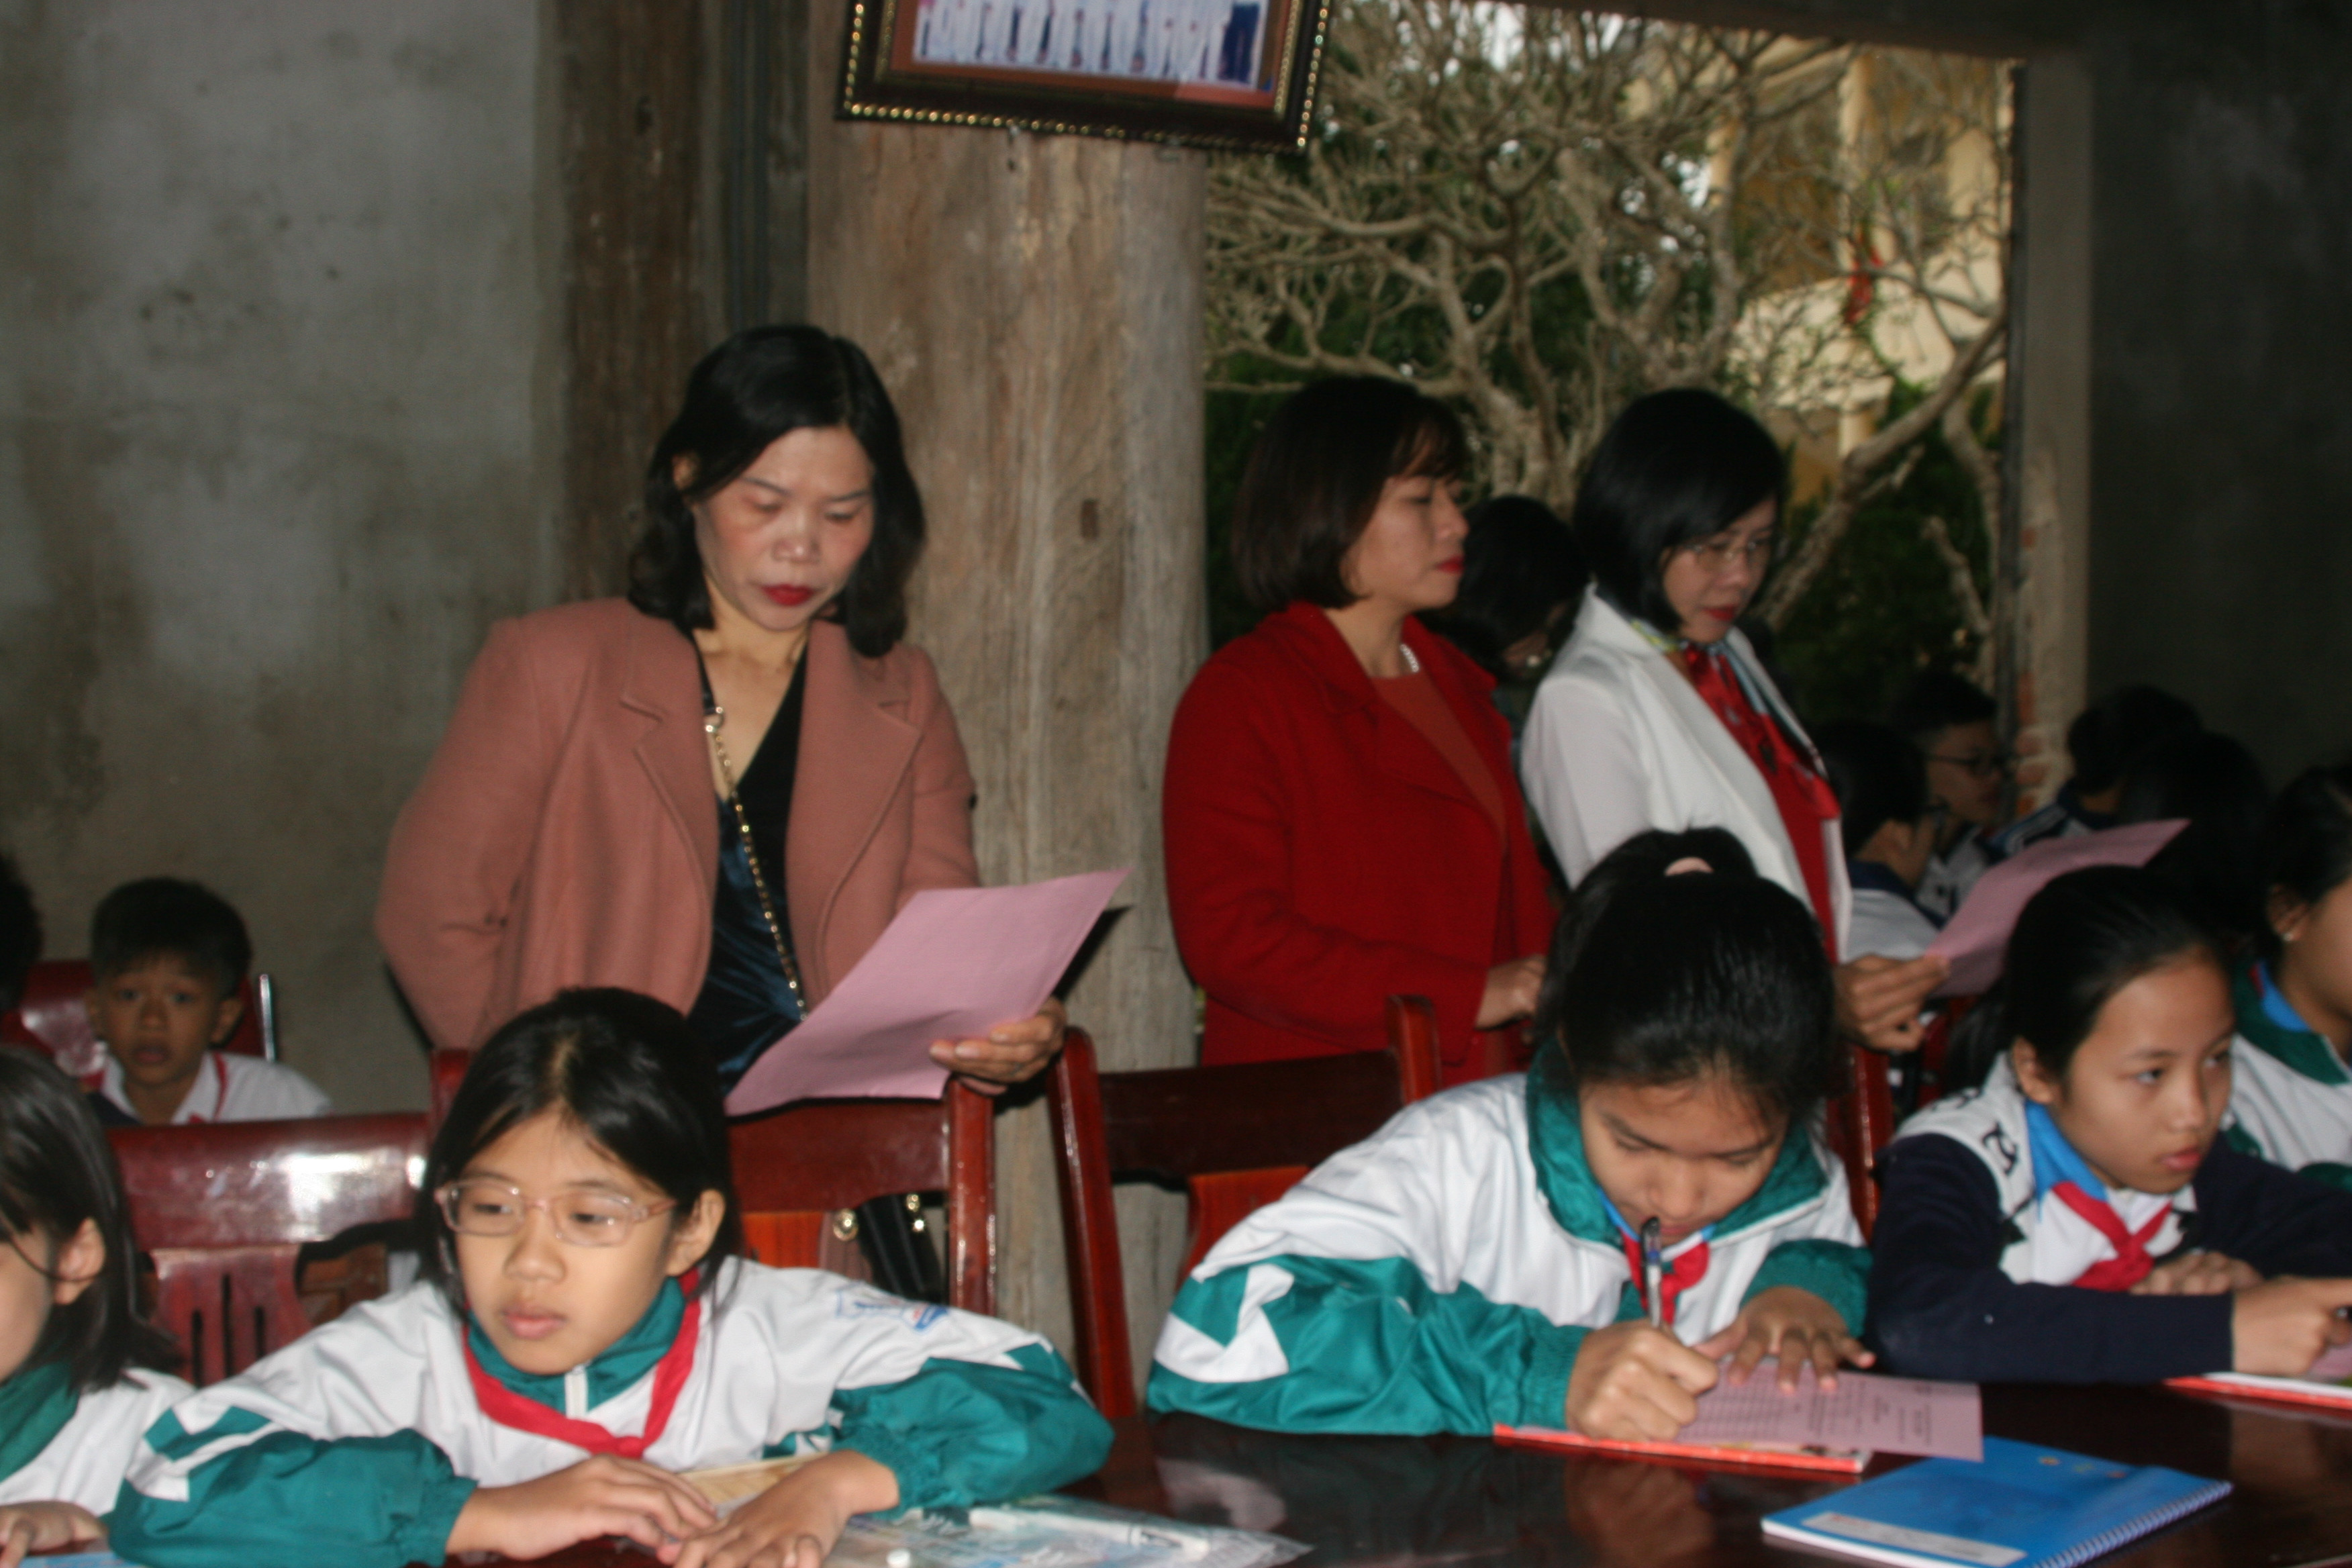 Tục Khai bút đầu năm là một nét đẹp trong văn hóa của dân tộc, thể hiện tinh thần hiếu học, tôn trọng chữ nghĩa, đề cao sự học của người dân Việt Nam từ bao đời nay.